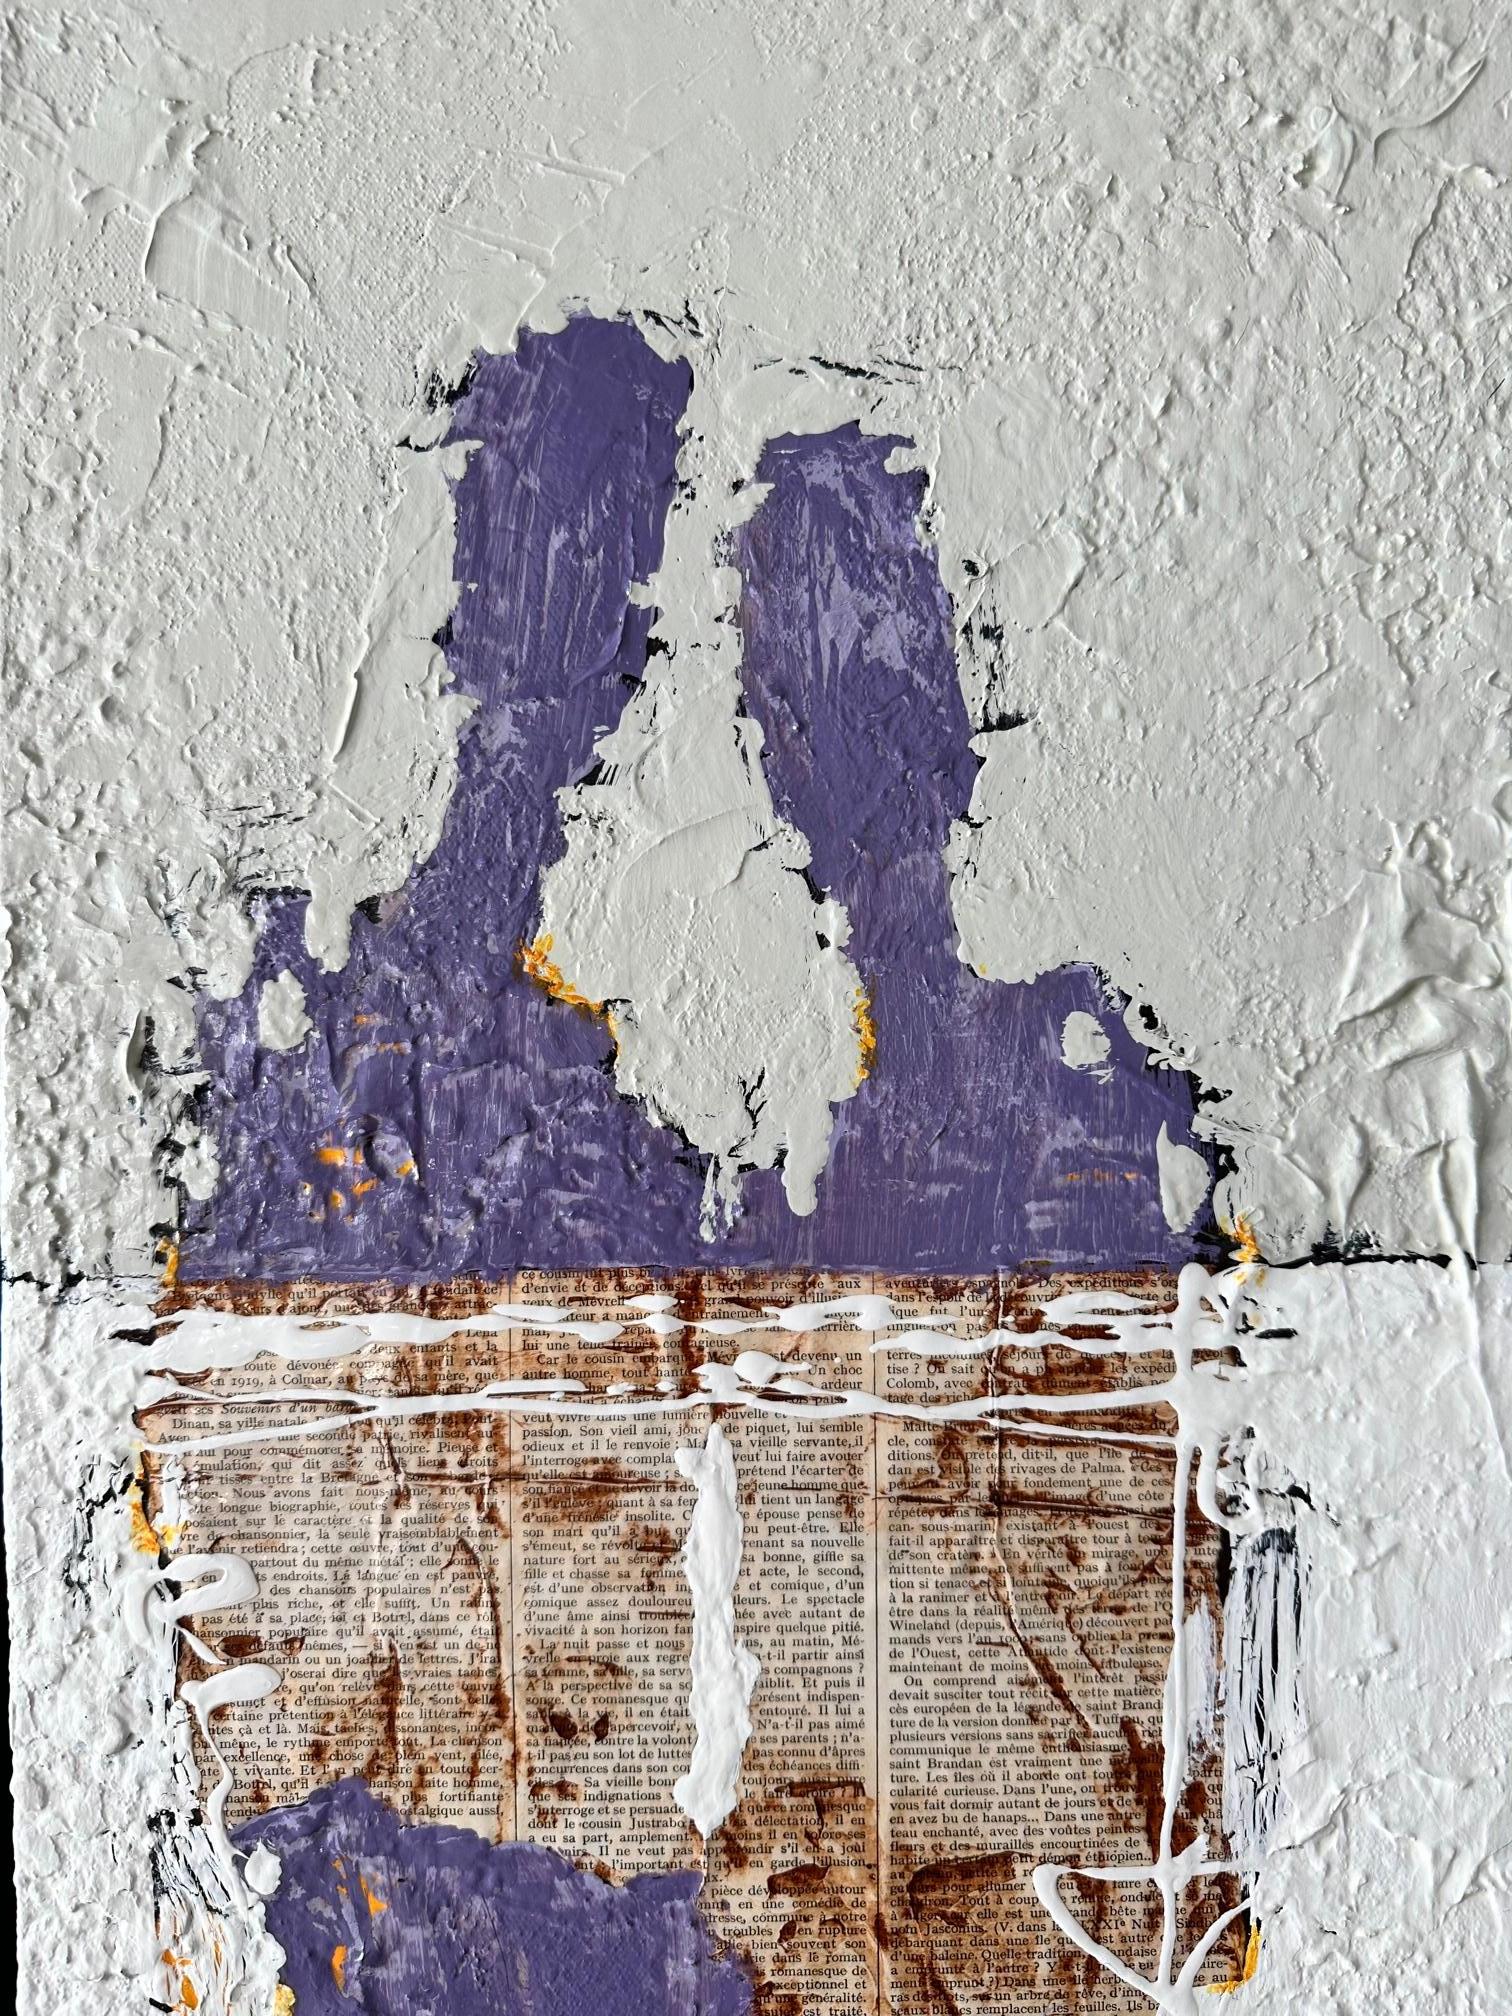 Une abstraction figurative unique d'un couple réalisée en utilisant du blanc vibrant, du violet et du tan pour créer une œuvre d'art moderne originale et audacieuse. Cette peinture contemporaine de Svetlana Shalygina comporte une gamme unique de